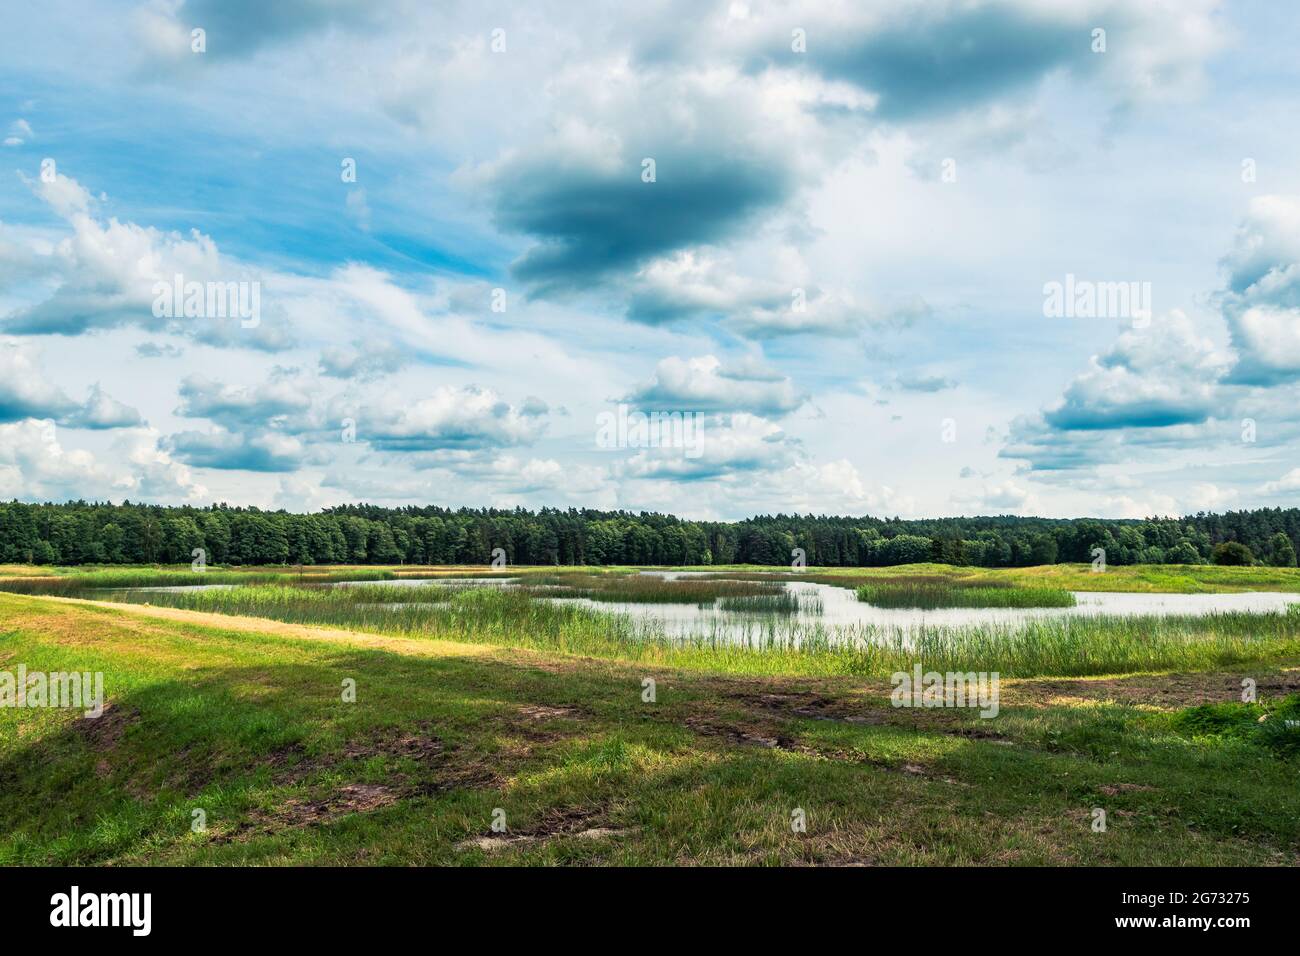 Schöne Aussicht auf den Echo-See, Zwierzyniec, Lubelskie, Polen. Panoramabild von See, Wiese, Wald und bewölktem Himmel. Stockfoto